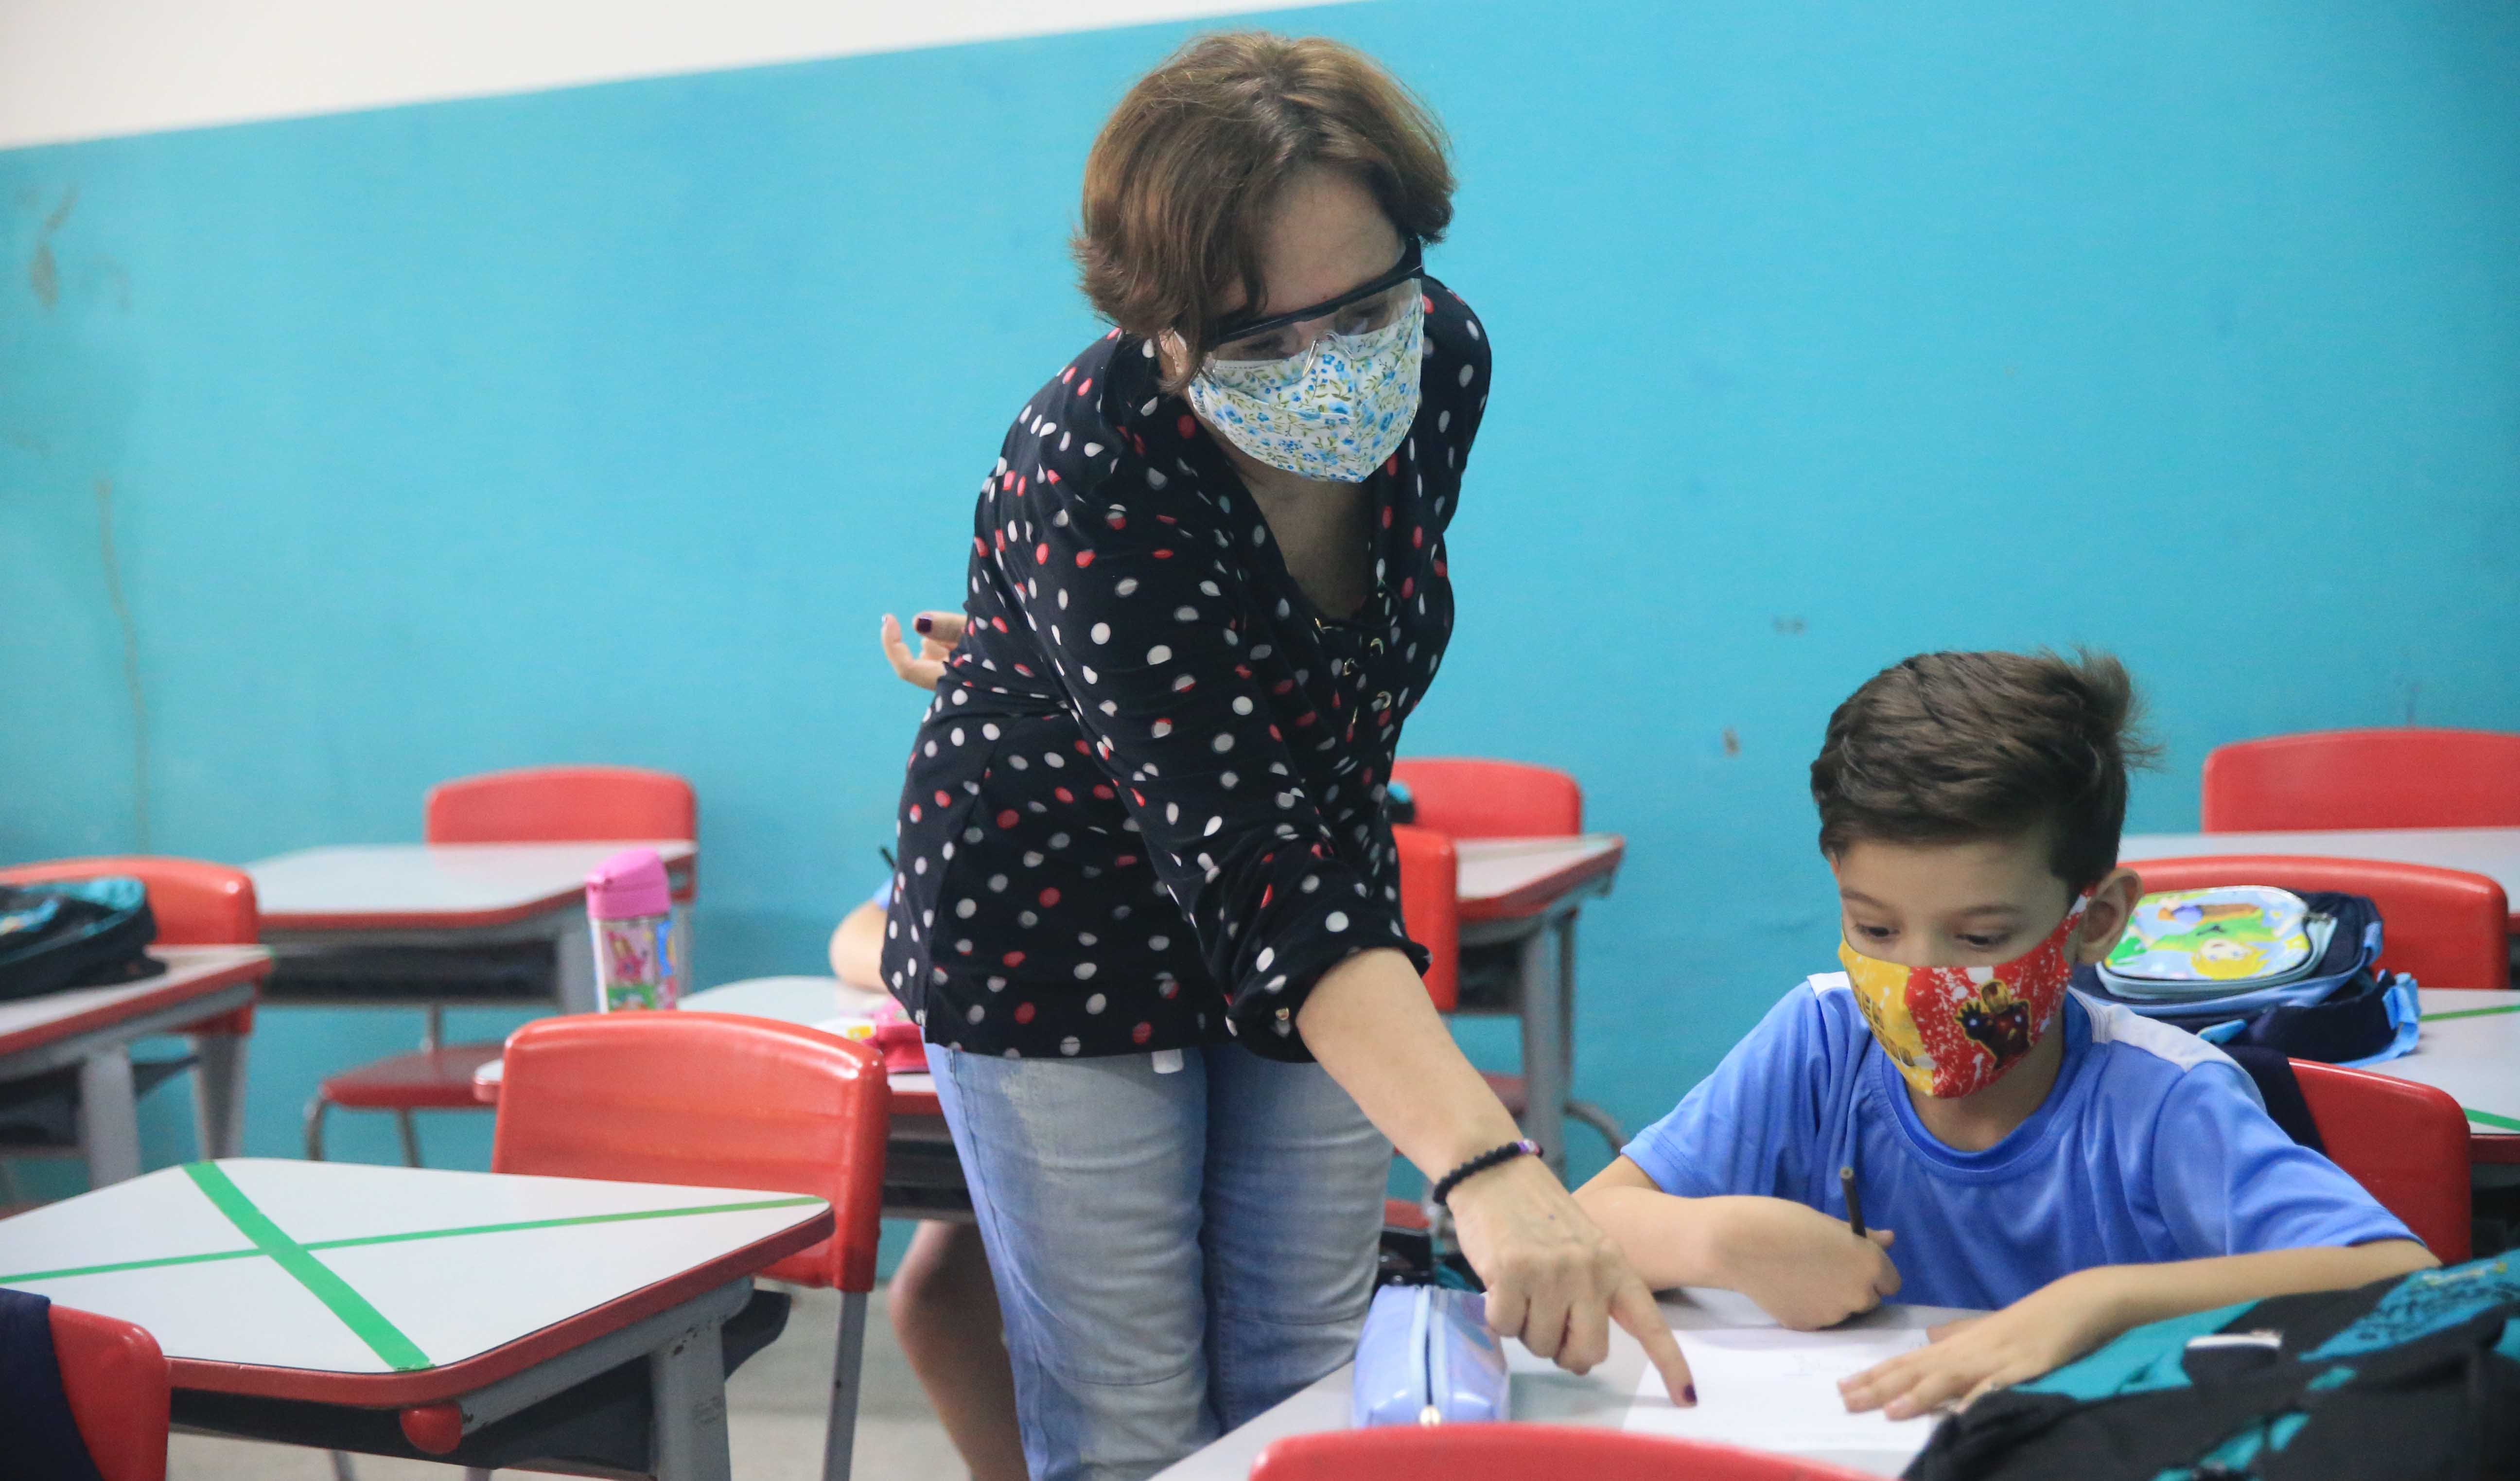 professor e aluno em sala de aula, ambos usam máscara e aluno lê um livro observado pela professora